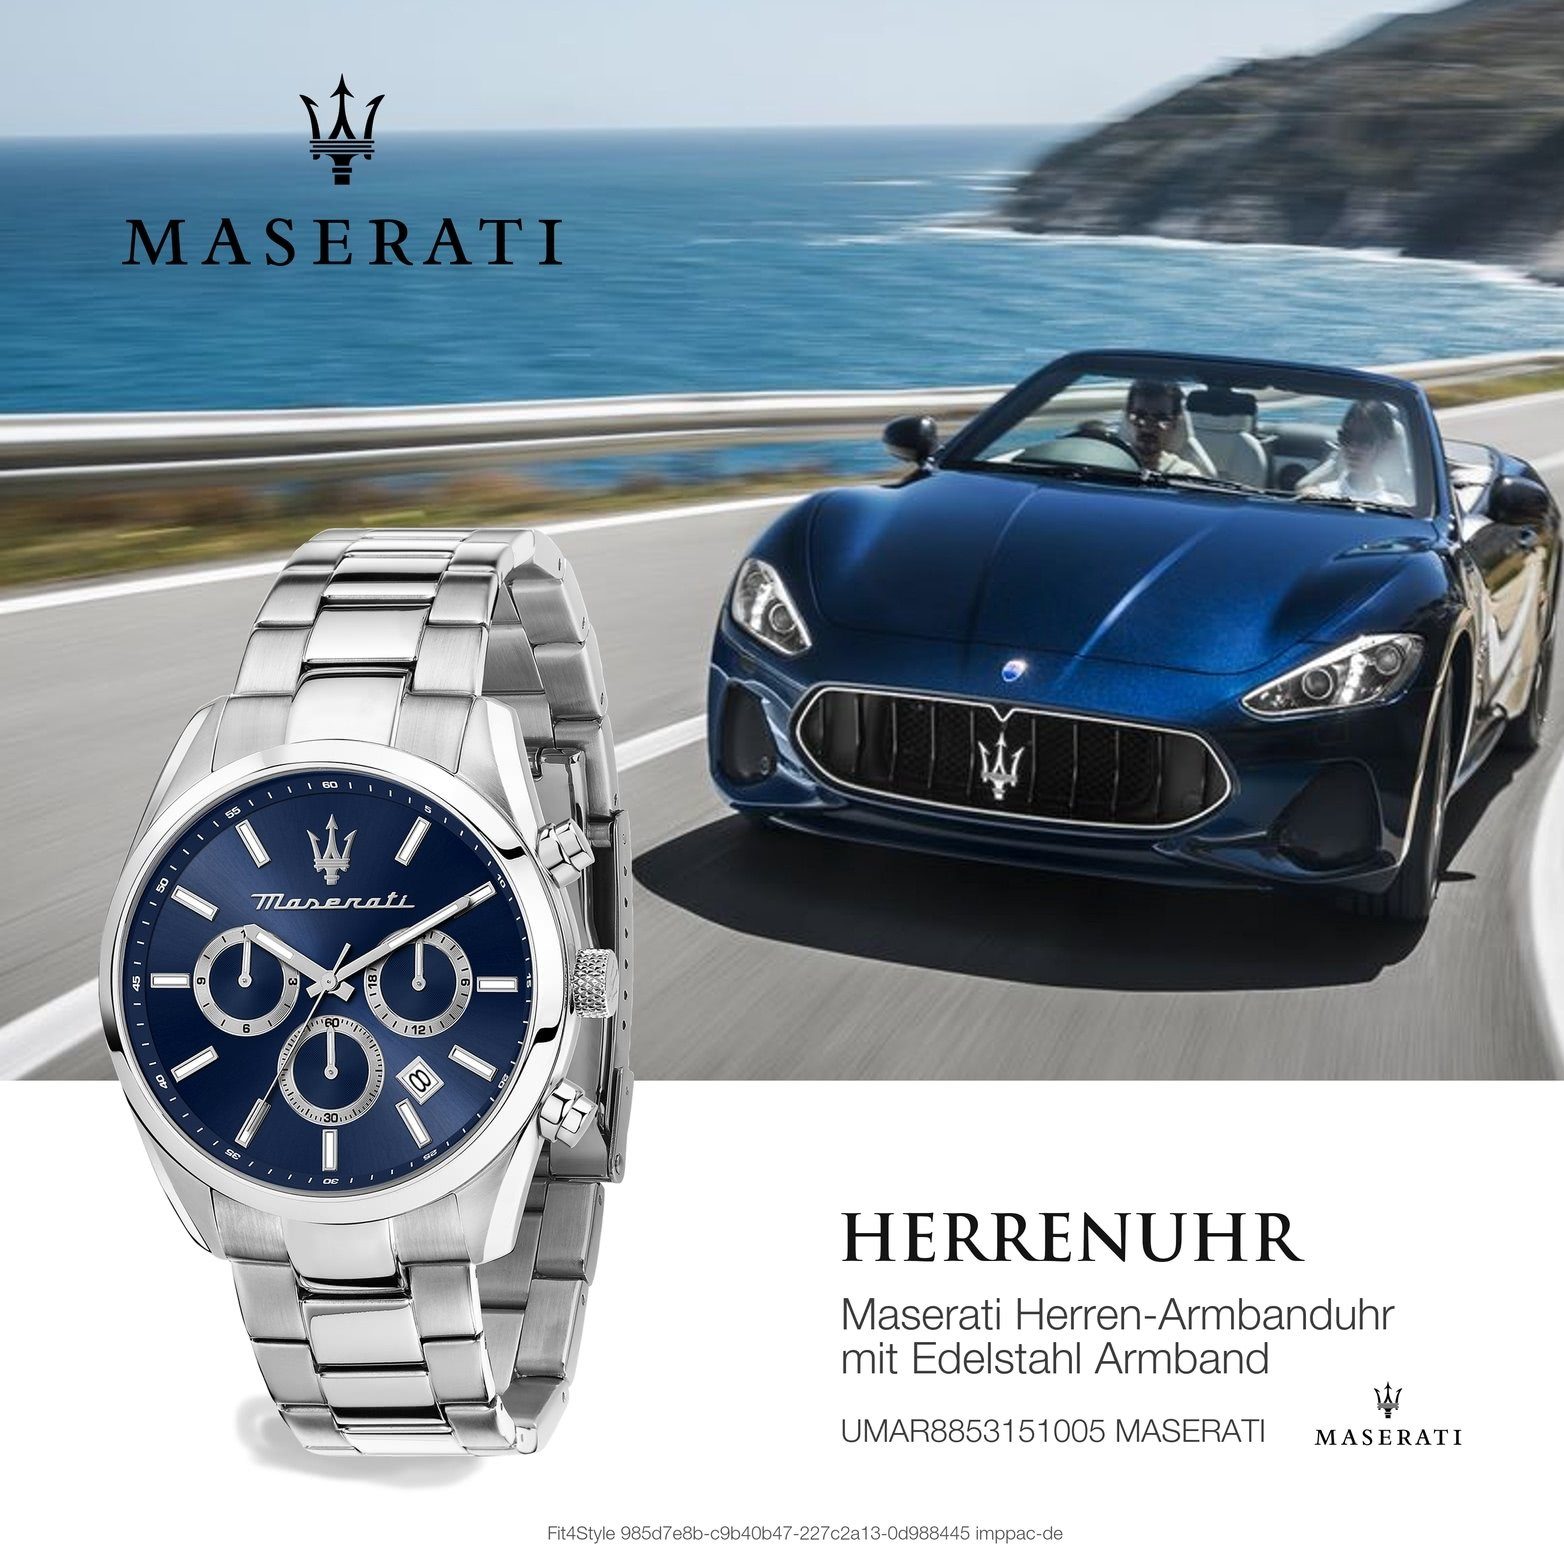 MASERATI Multifunktionsuhr Maserati Herrenuhr Edelstahlarmband, blau (ca. rundes Attrazione, 43mm) groß Gehäuse, Herrenuhr